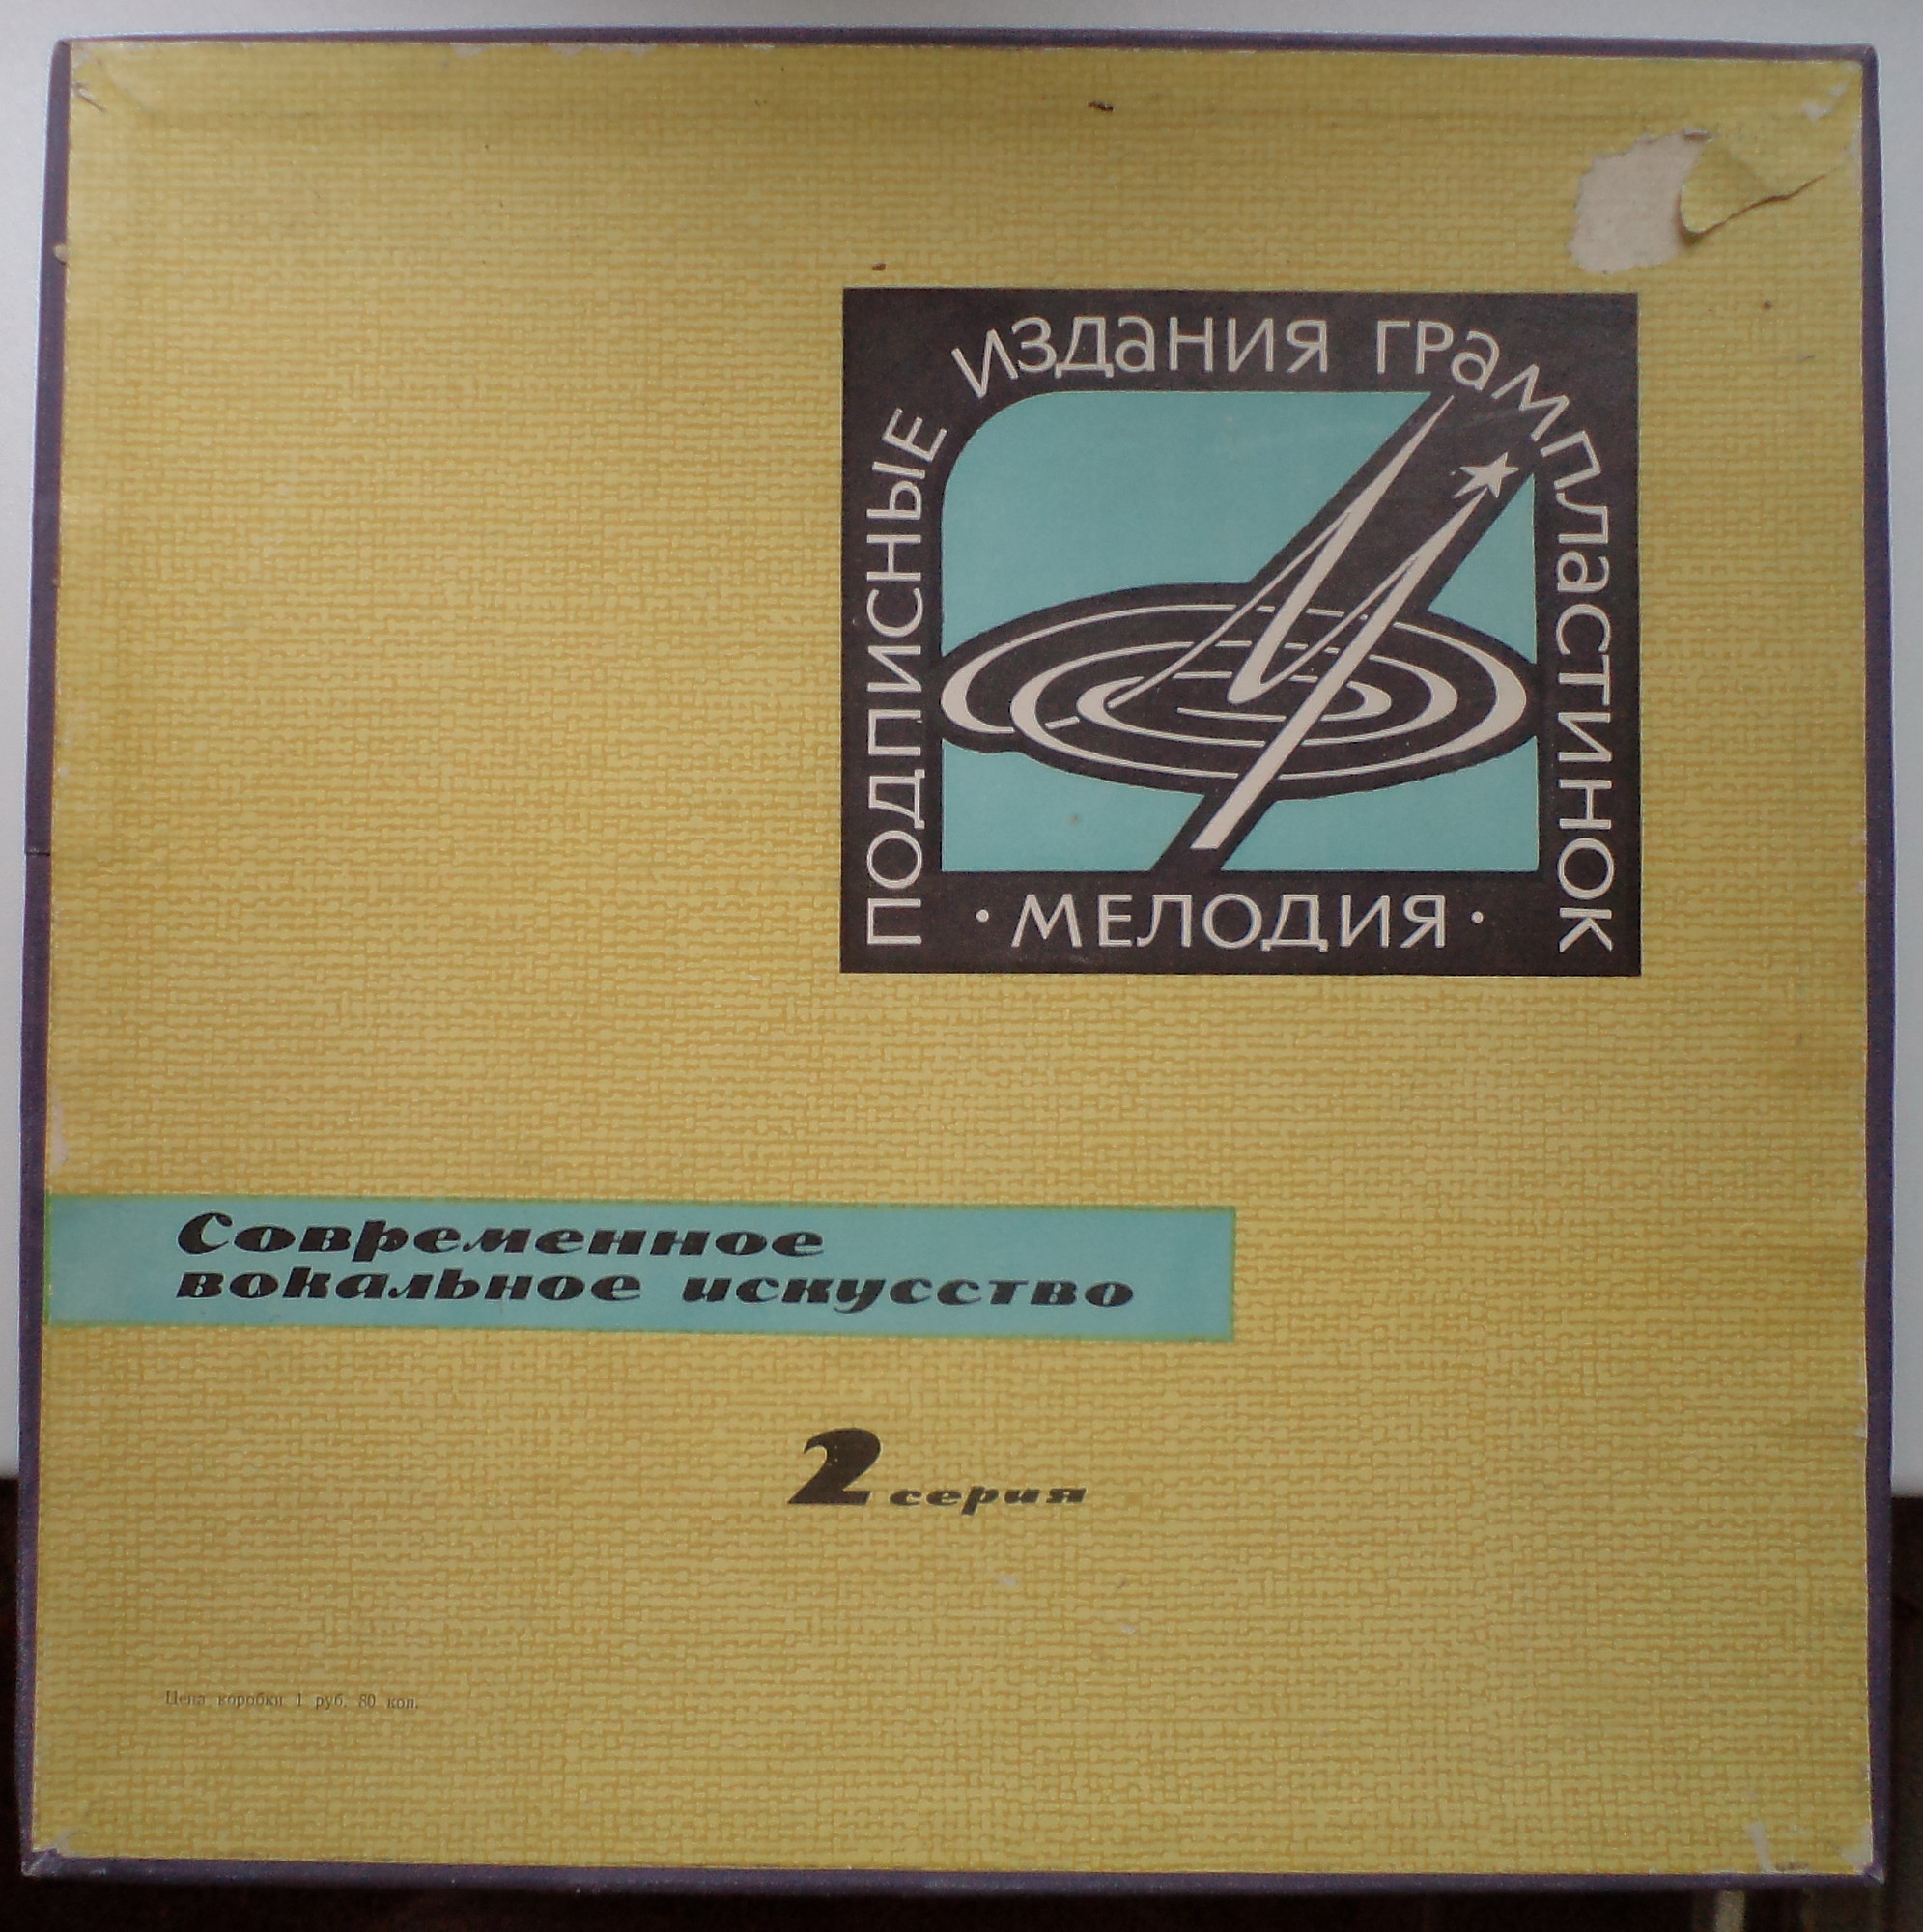 Современное вокальное искусство. 2 серия (4 пластинки, 1965 г.)